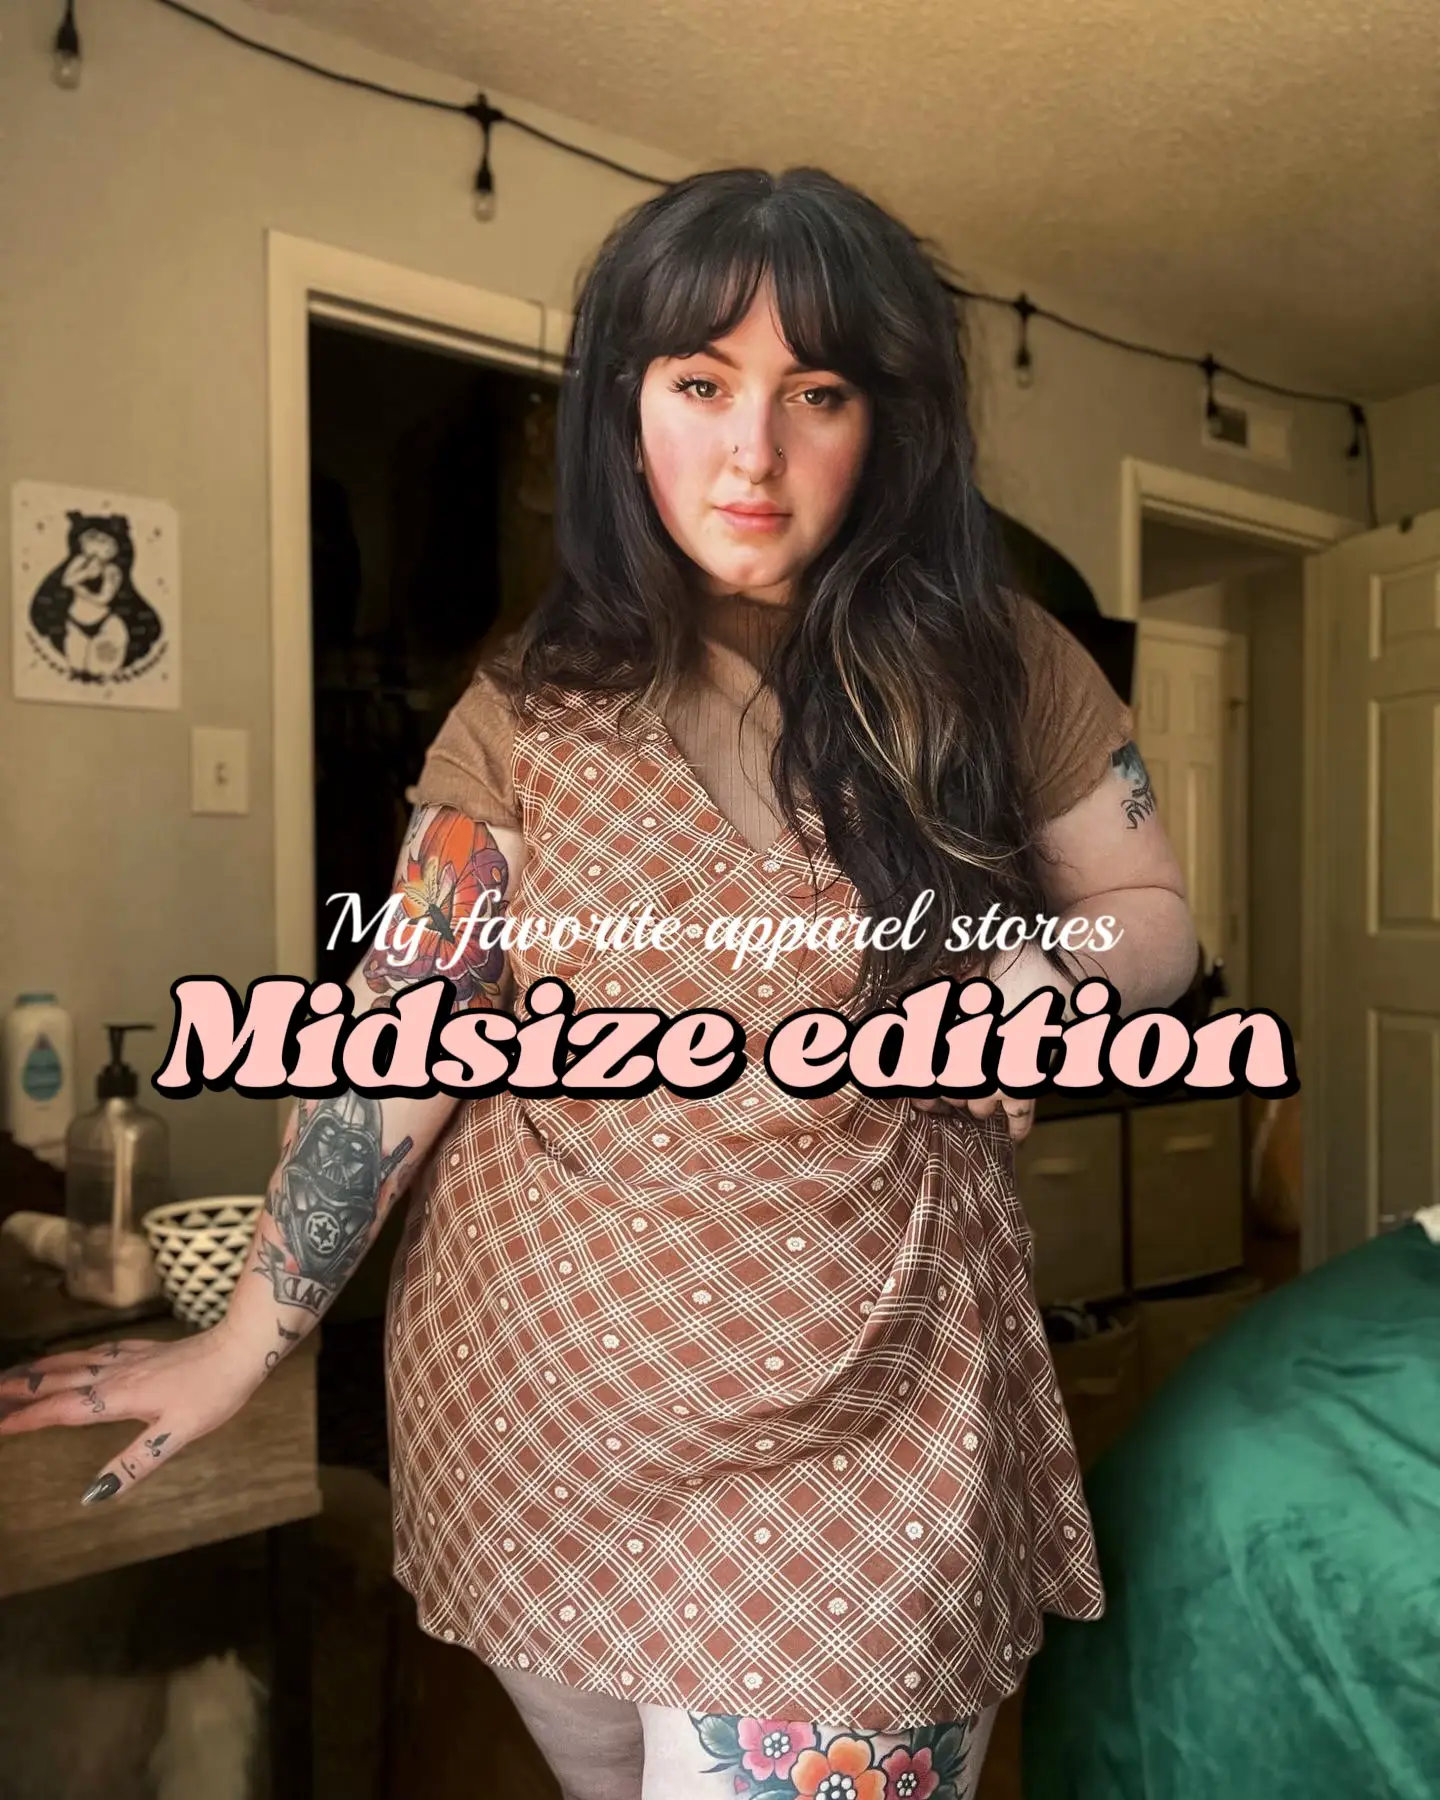 midsize fashion modest - Lemon8 Search